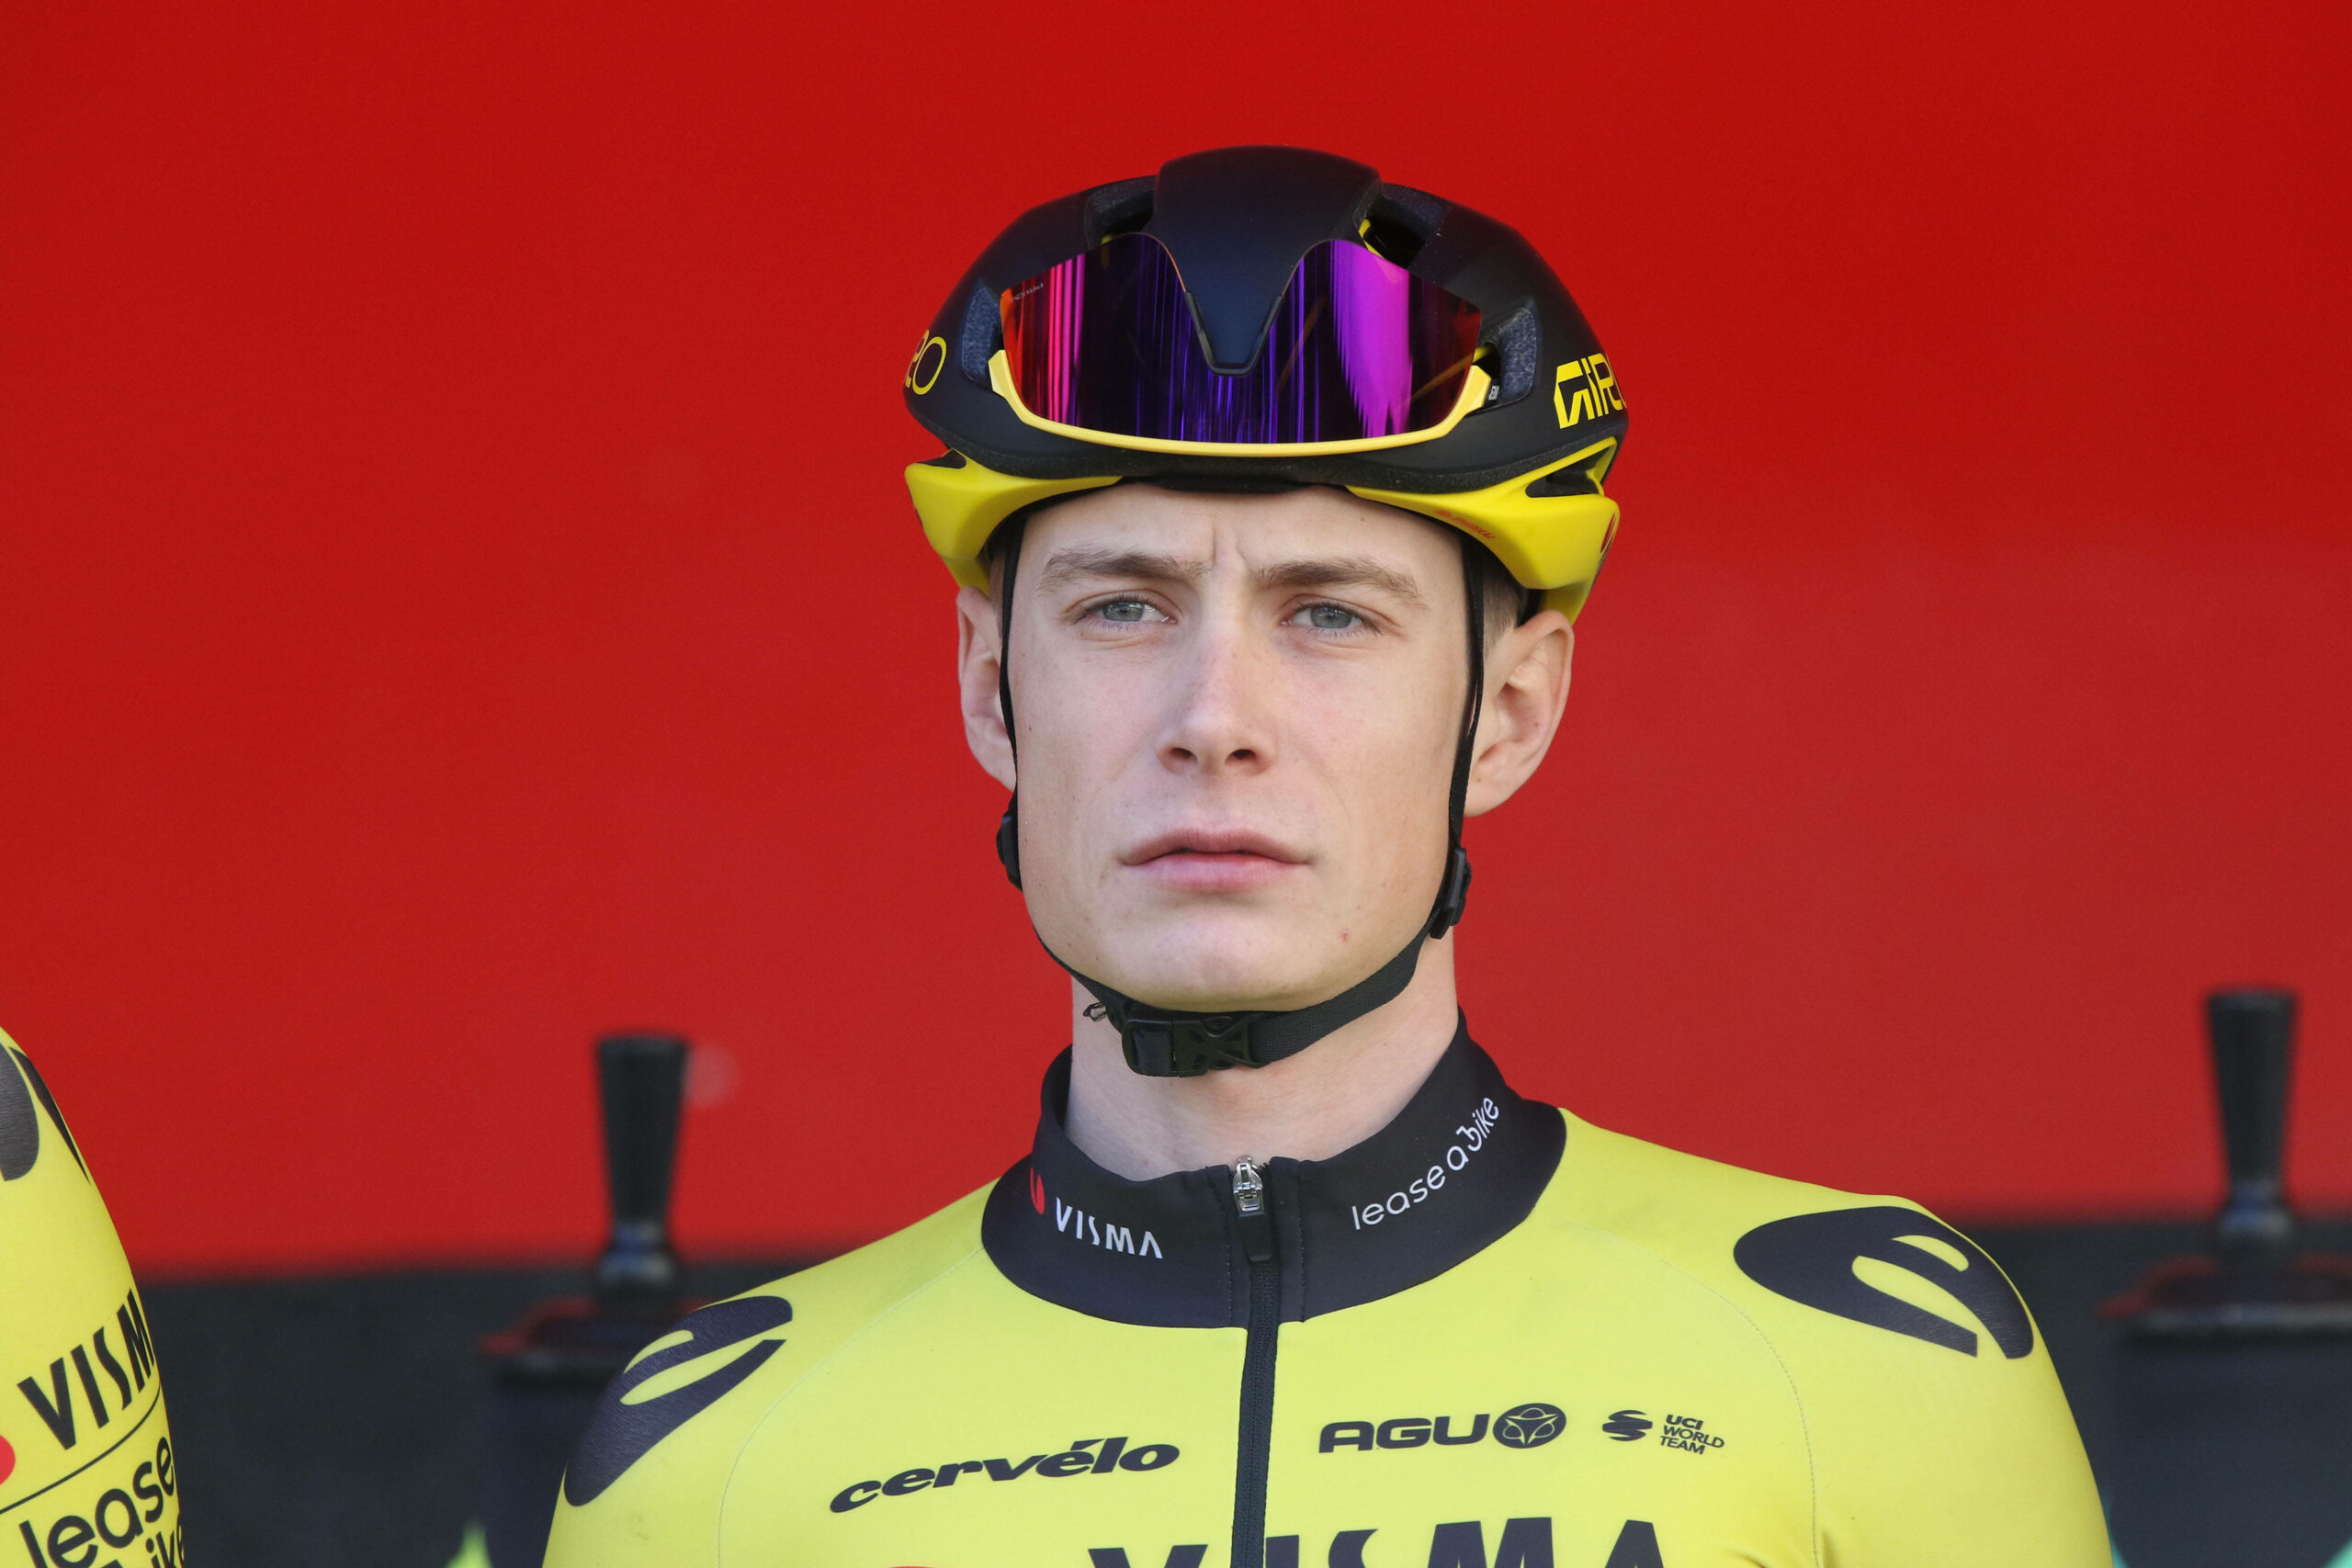 Tour-de-France-Sieger Jonas Vingegaard mit seinem Helm.